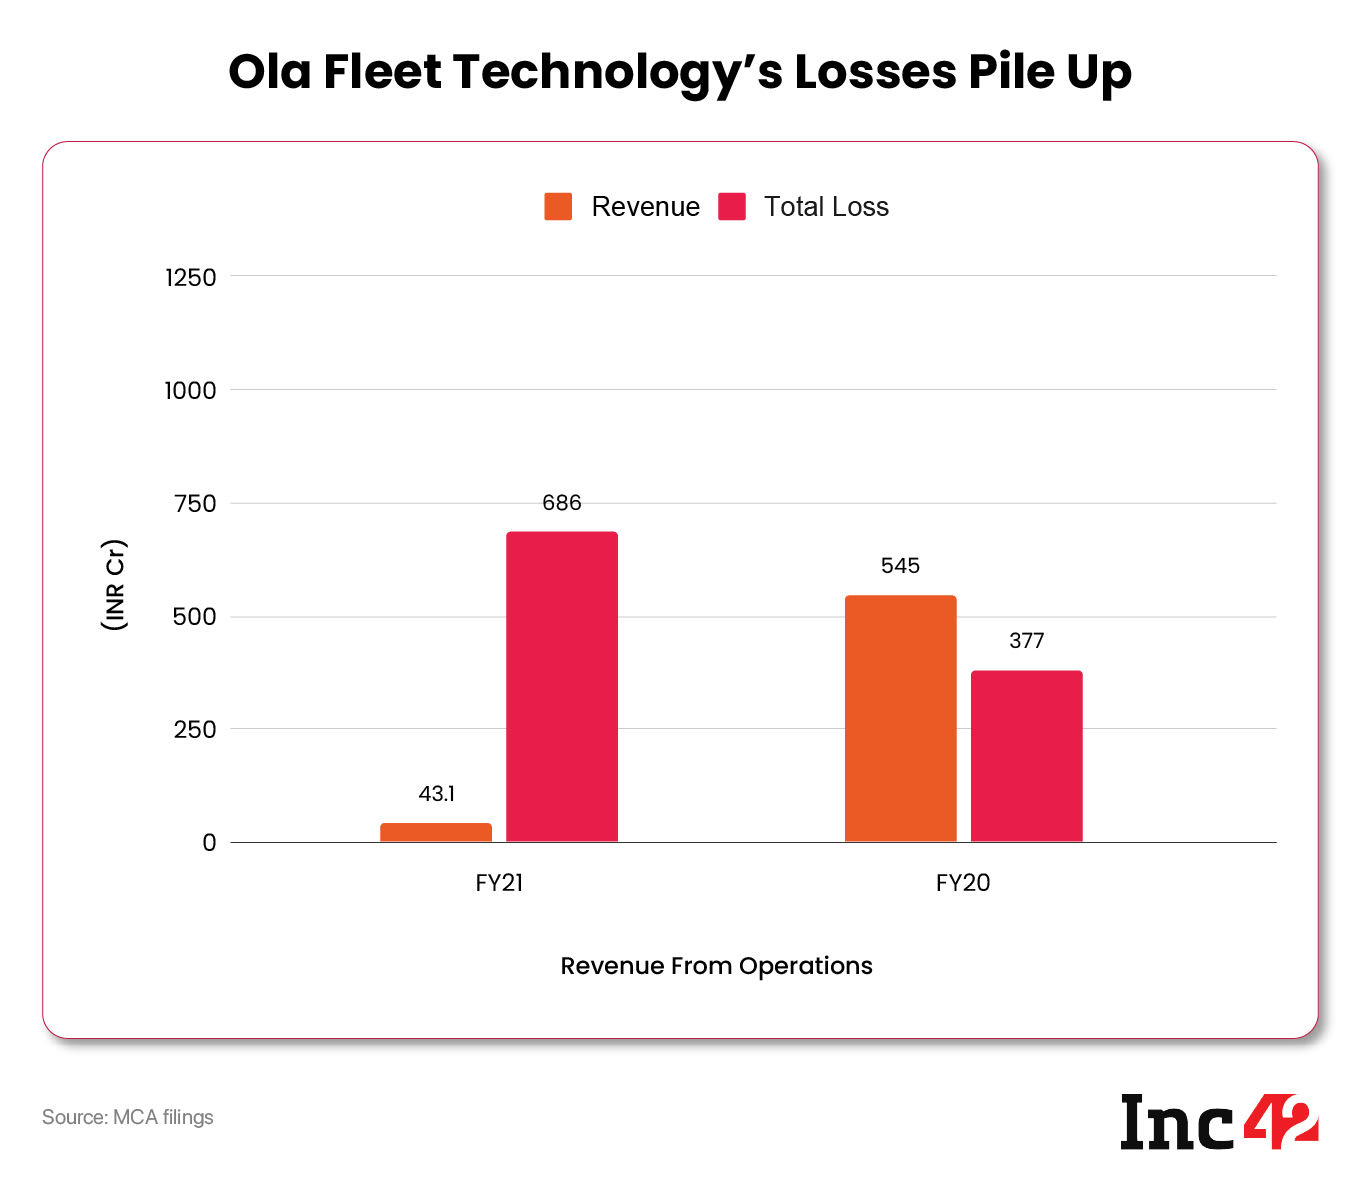 ola fleet technology losses pile up